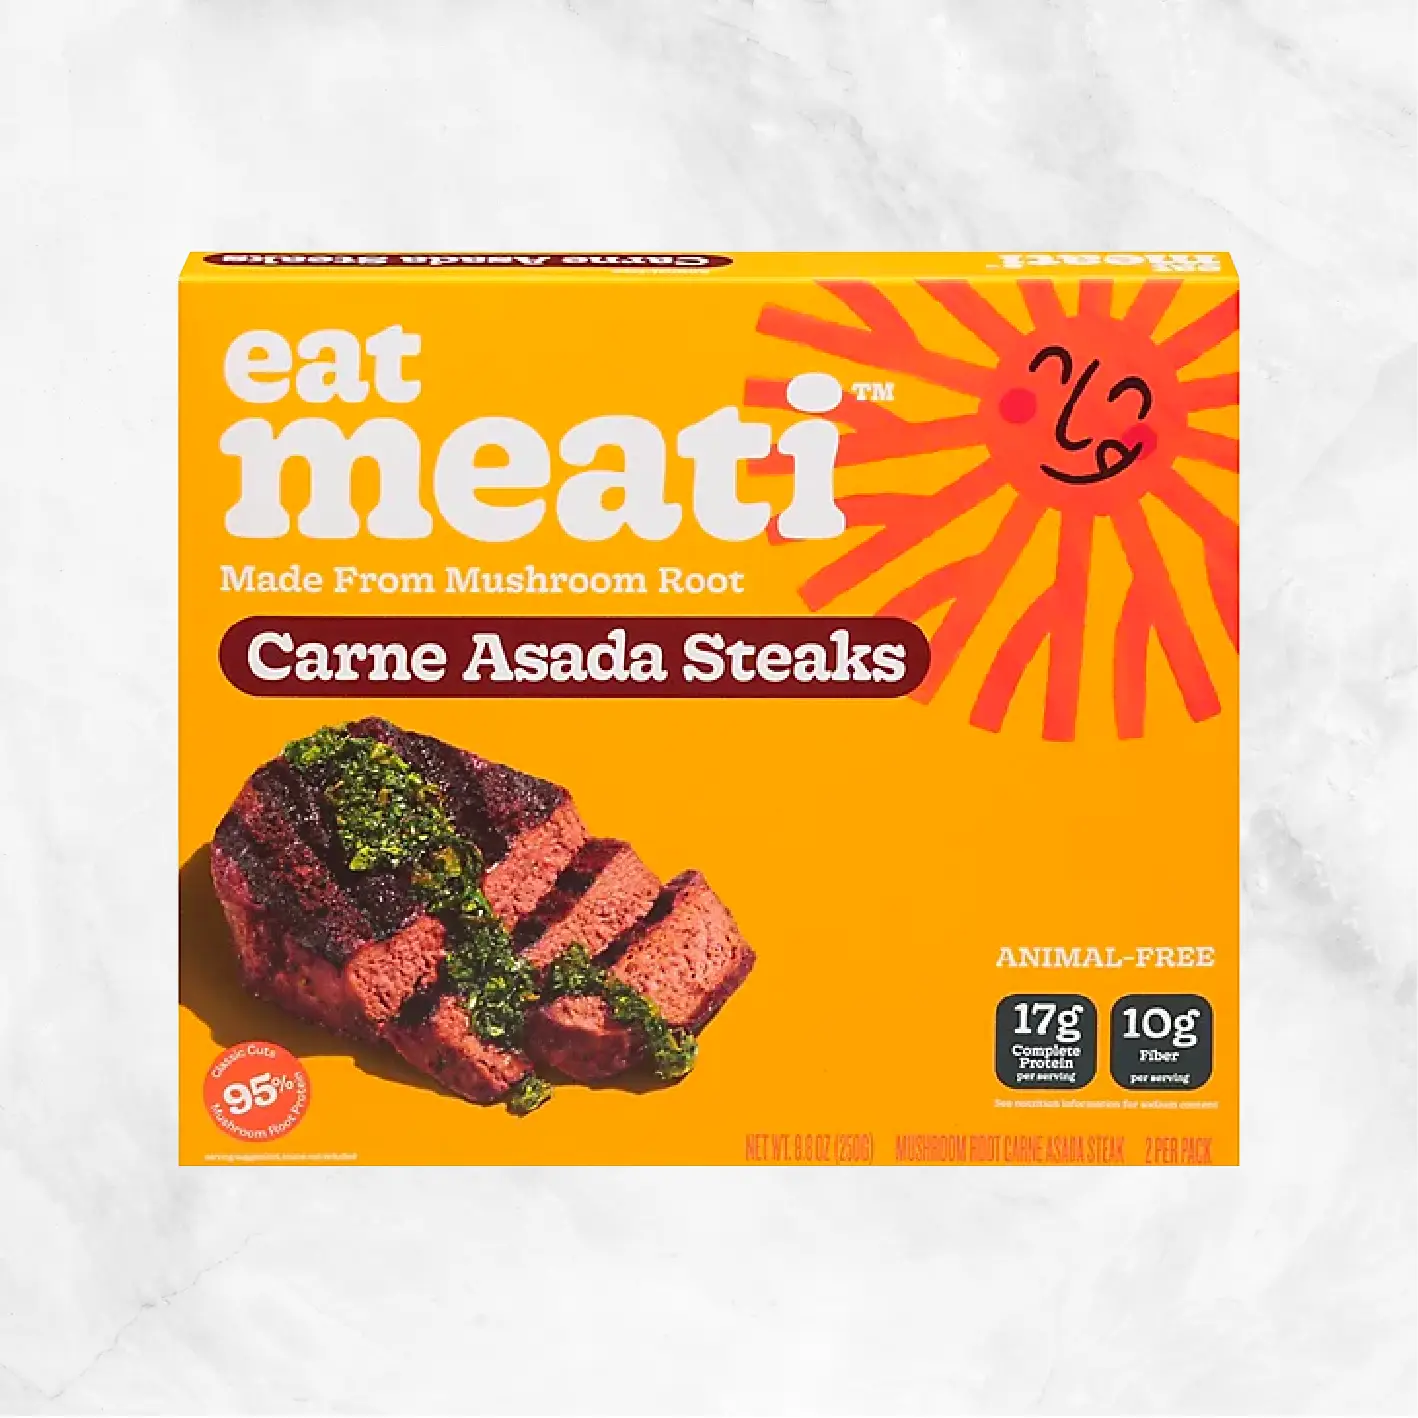 Steak Carne Asada